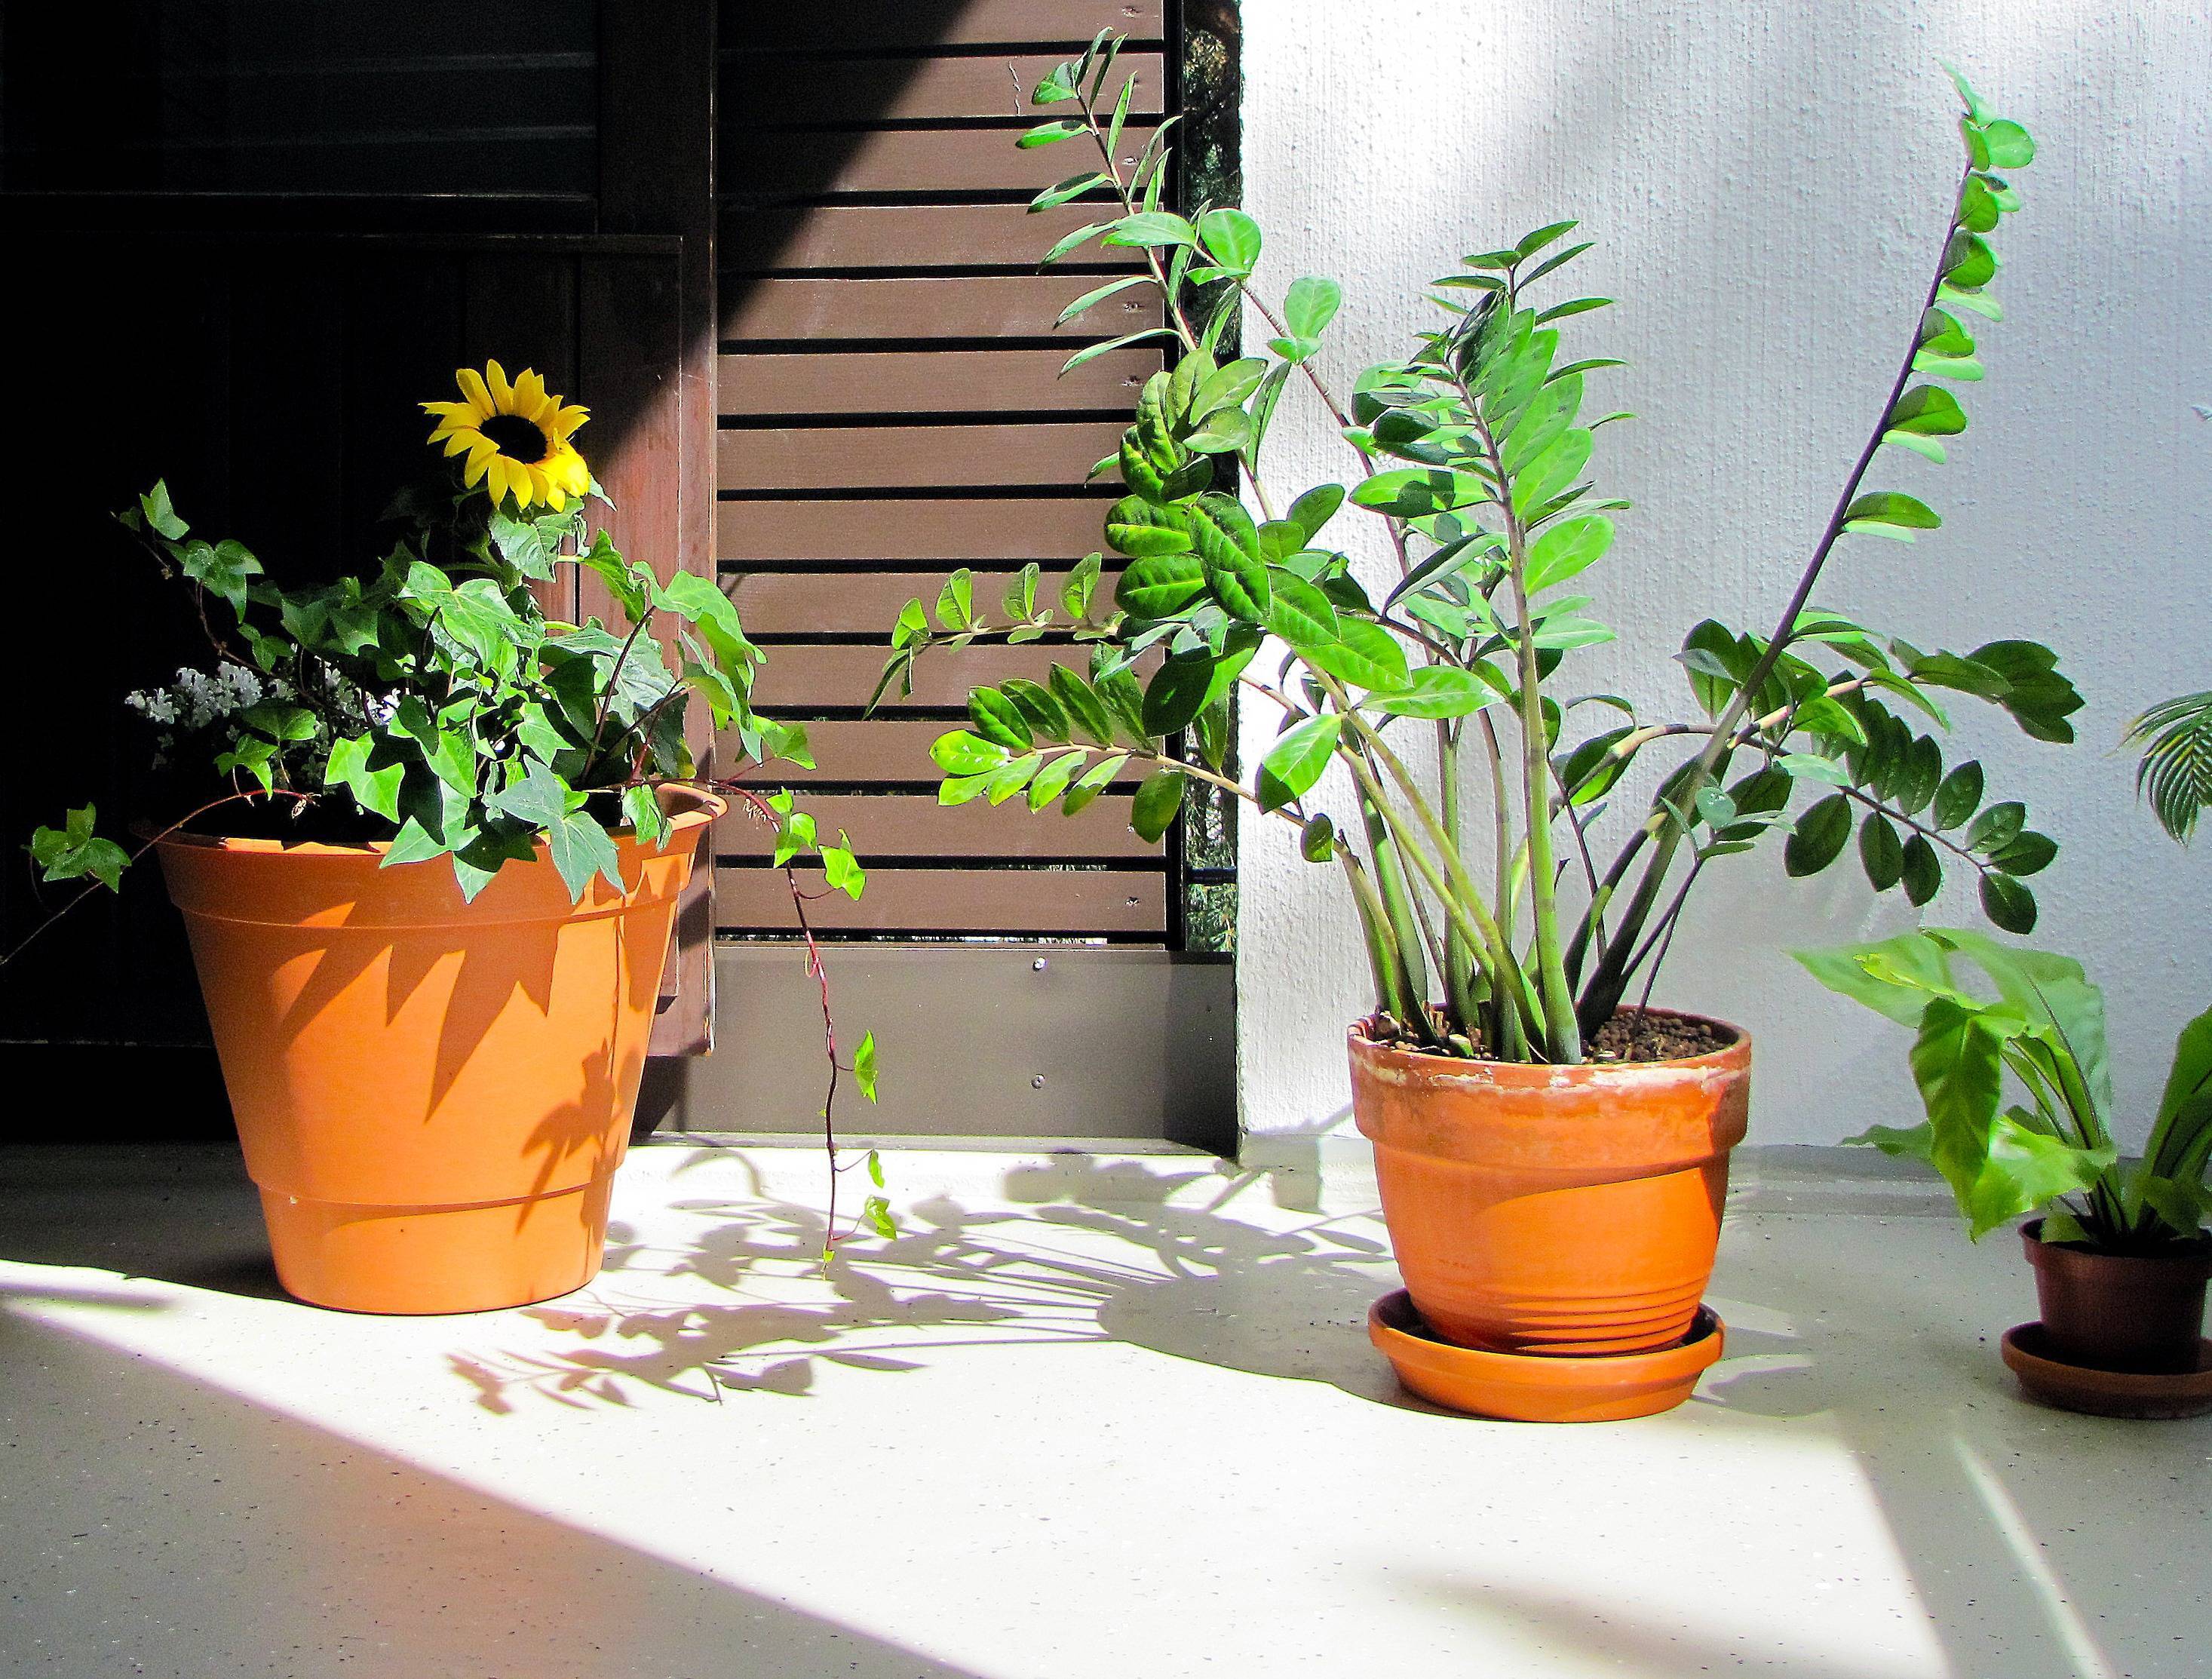 8 комнатных растений, которые не боятся сквозняков. условия, уход, фото — ботаничка